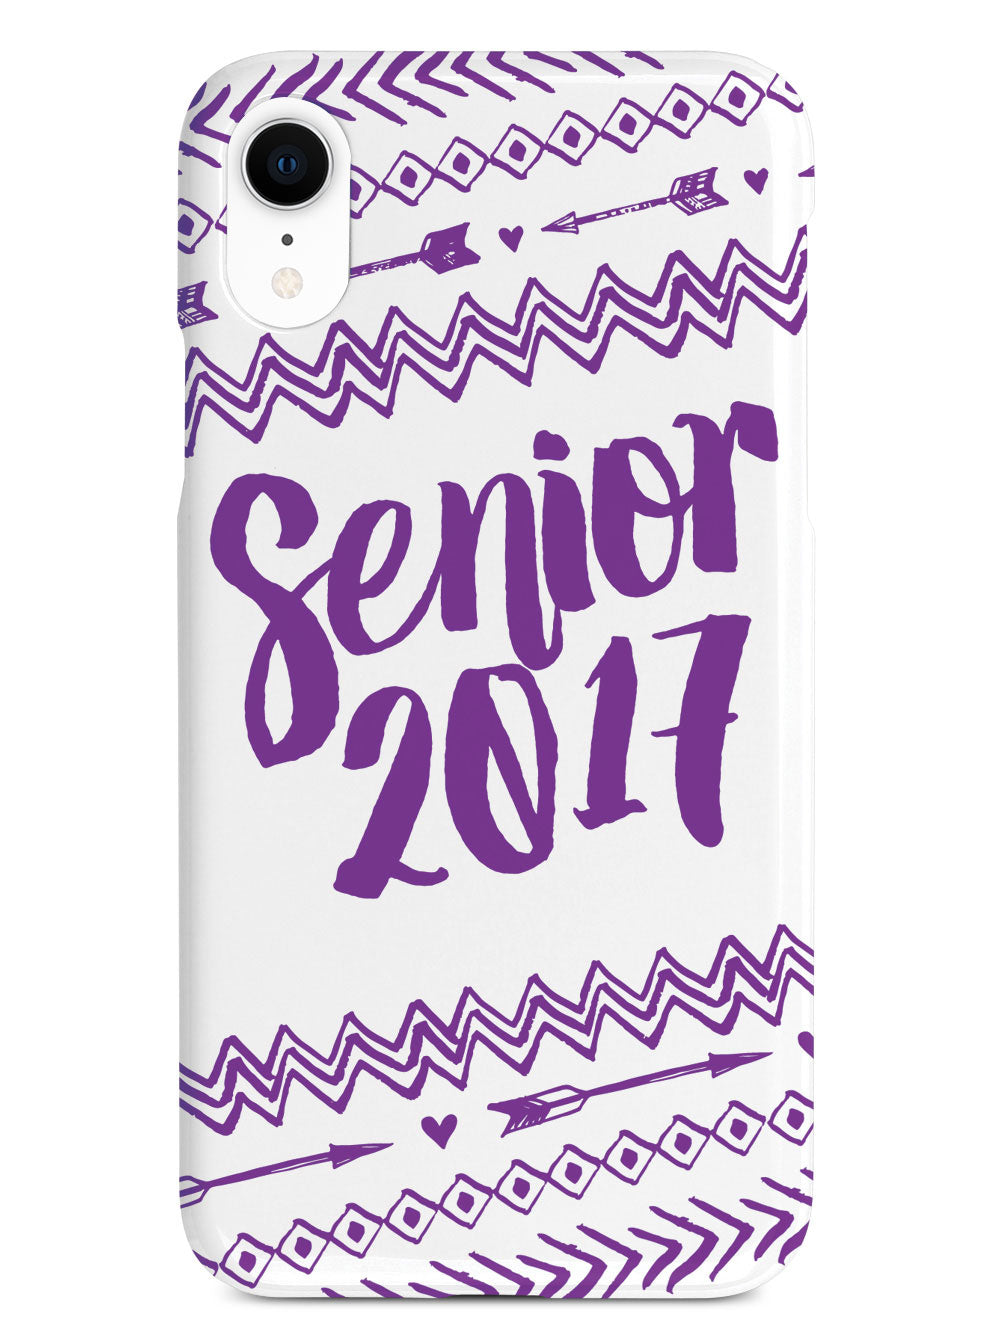 Senior 2017 - Purple Case